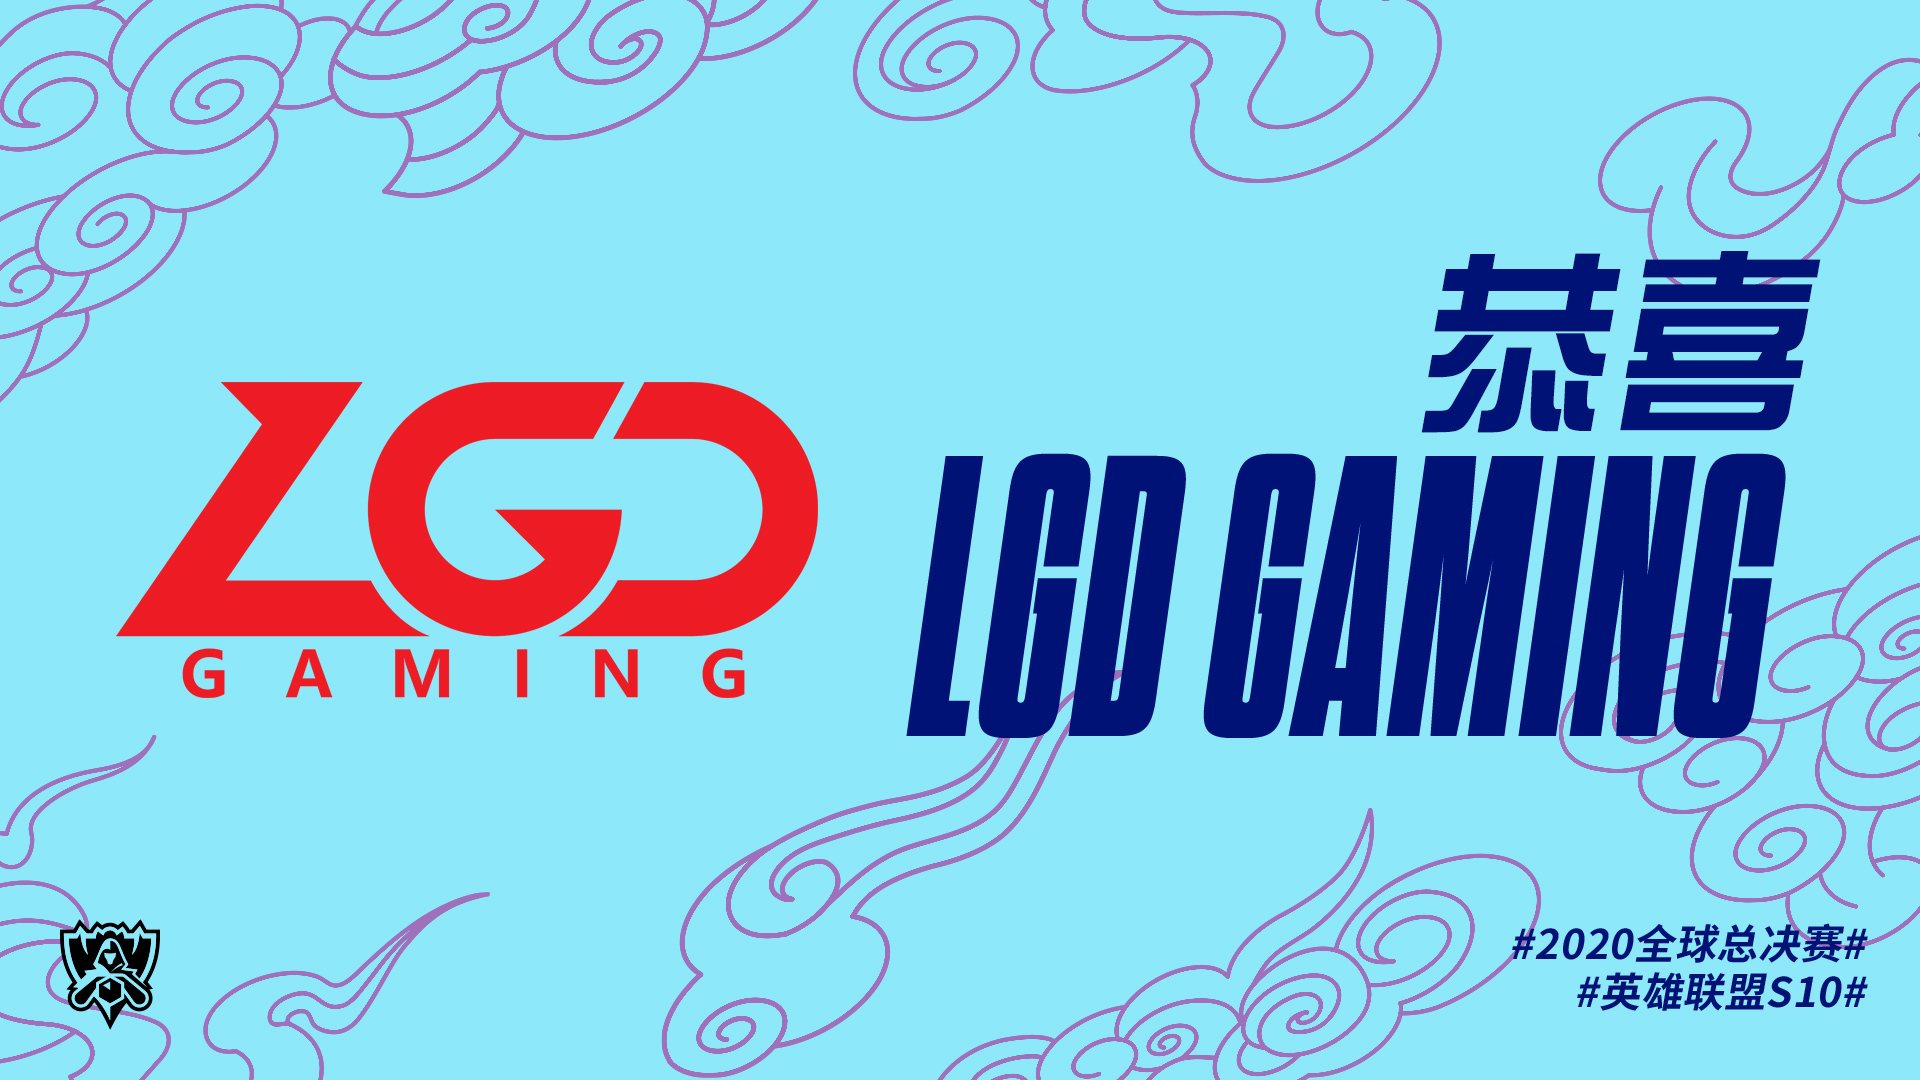 恭喜LGD晋级2020全球总决赛